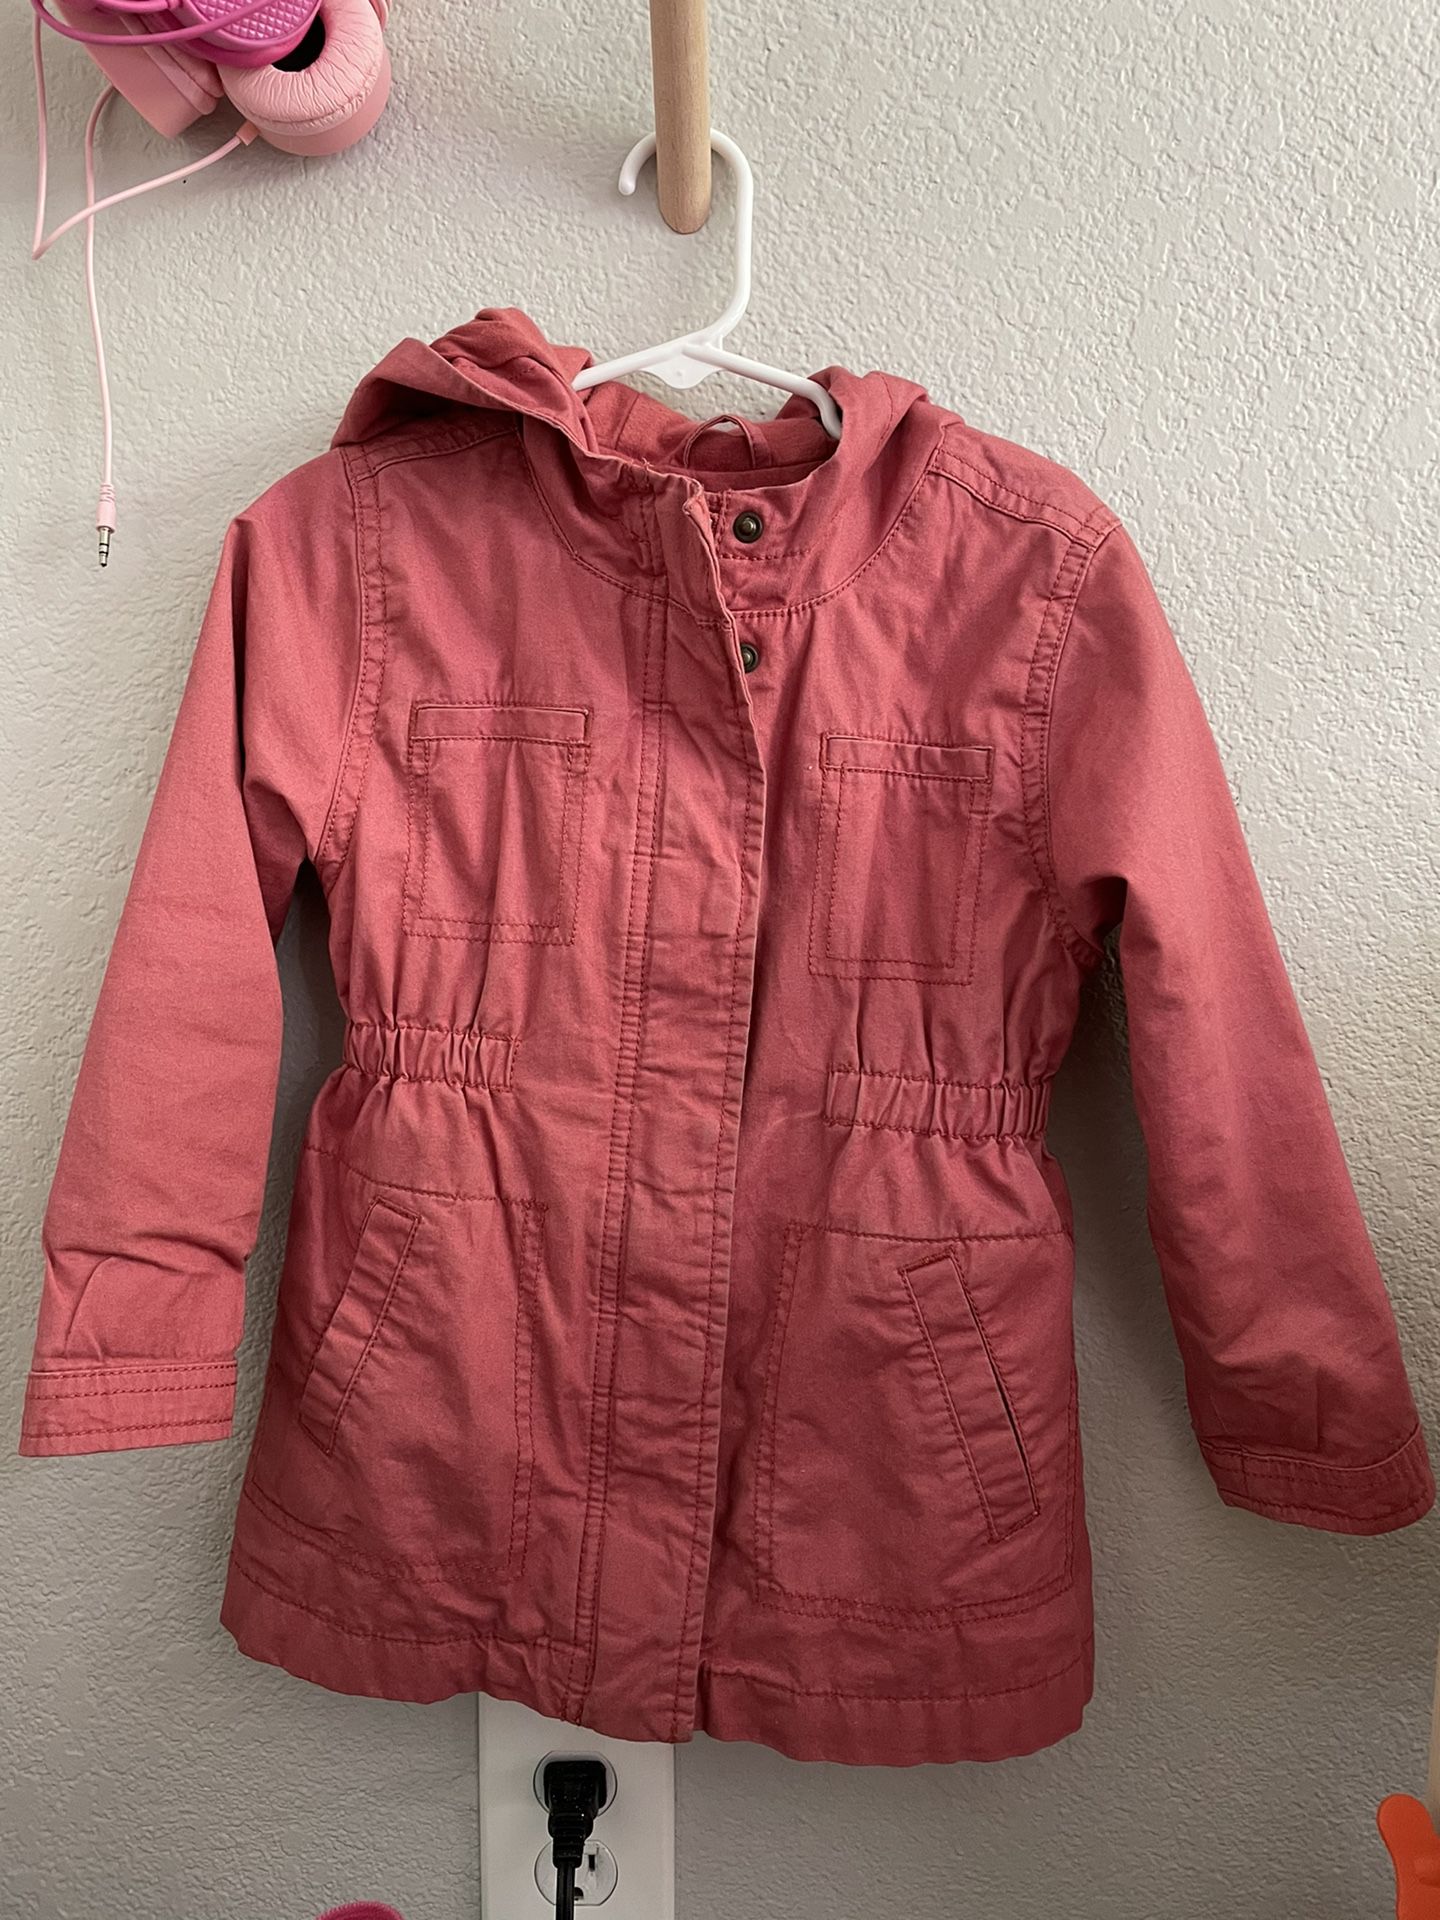 Old navy, Vintage Pink Jacket, 4T 